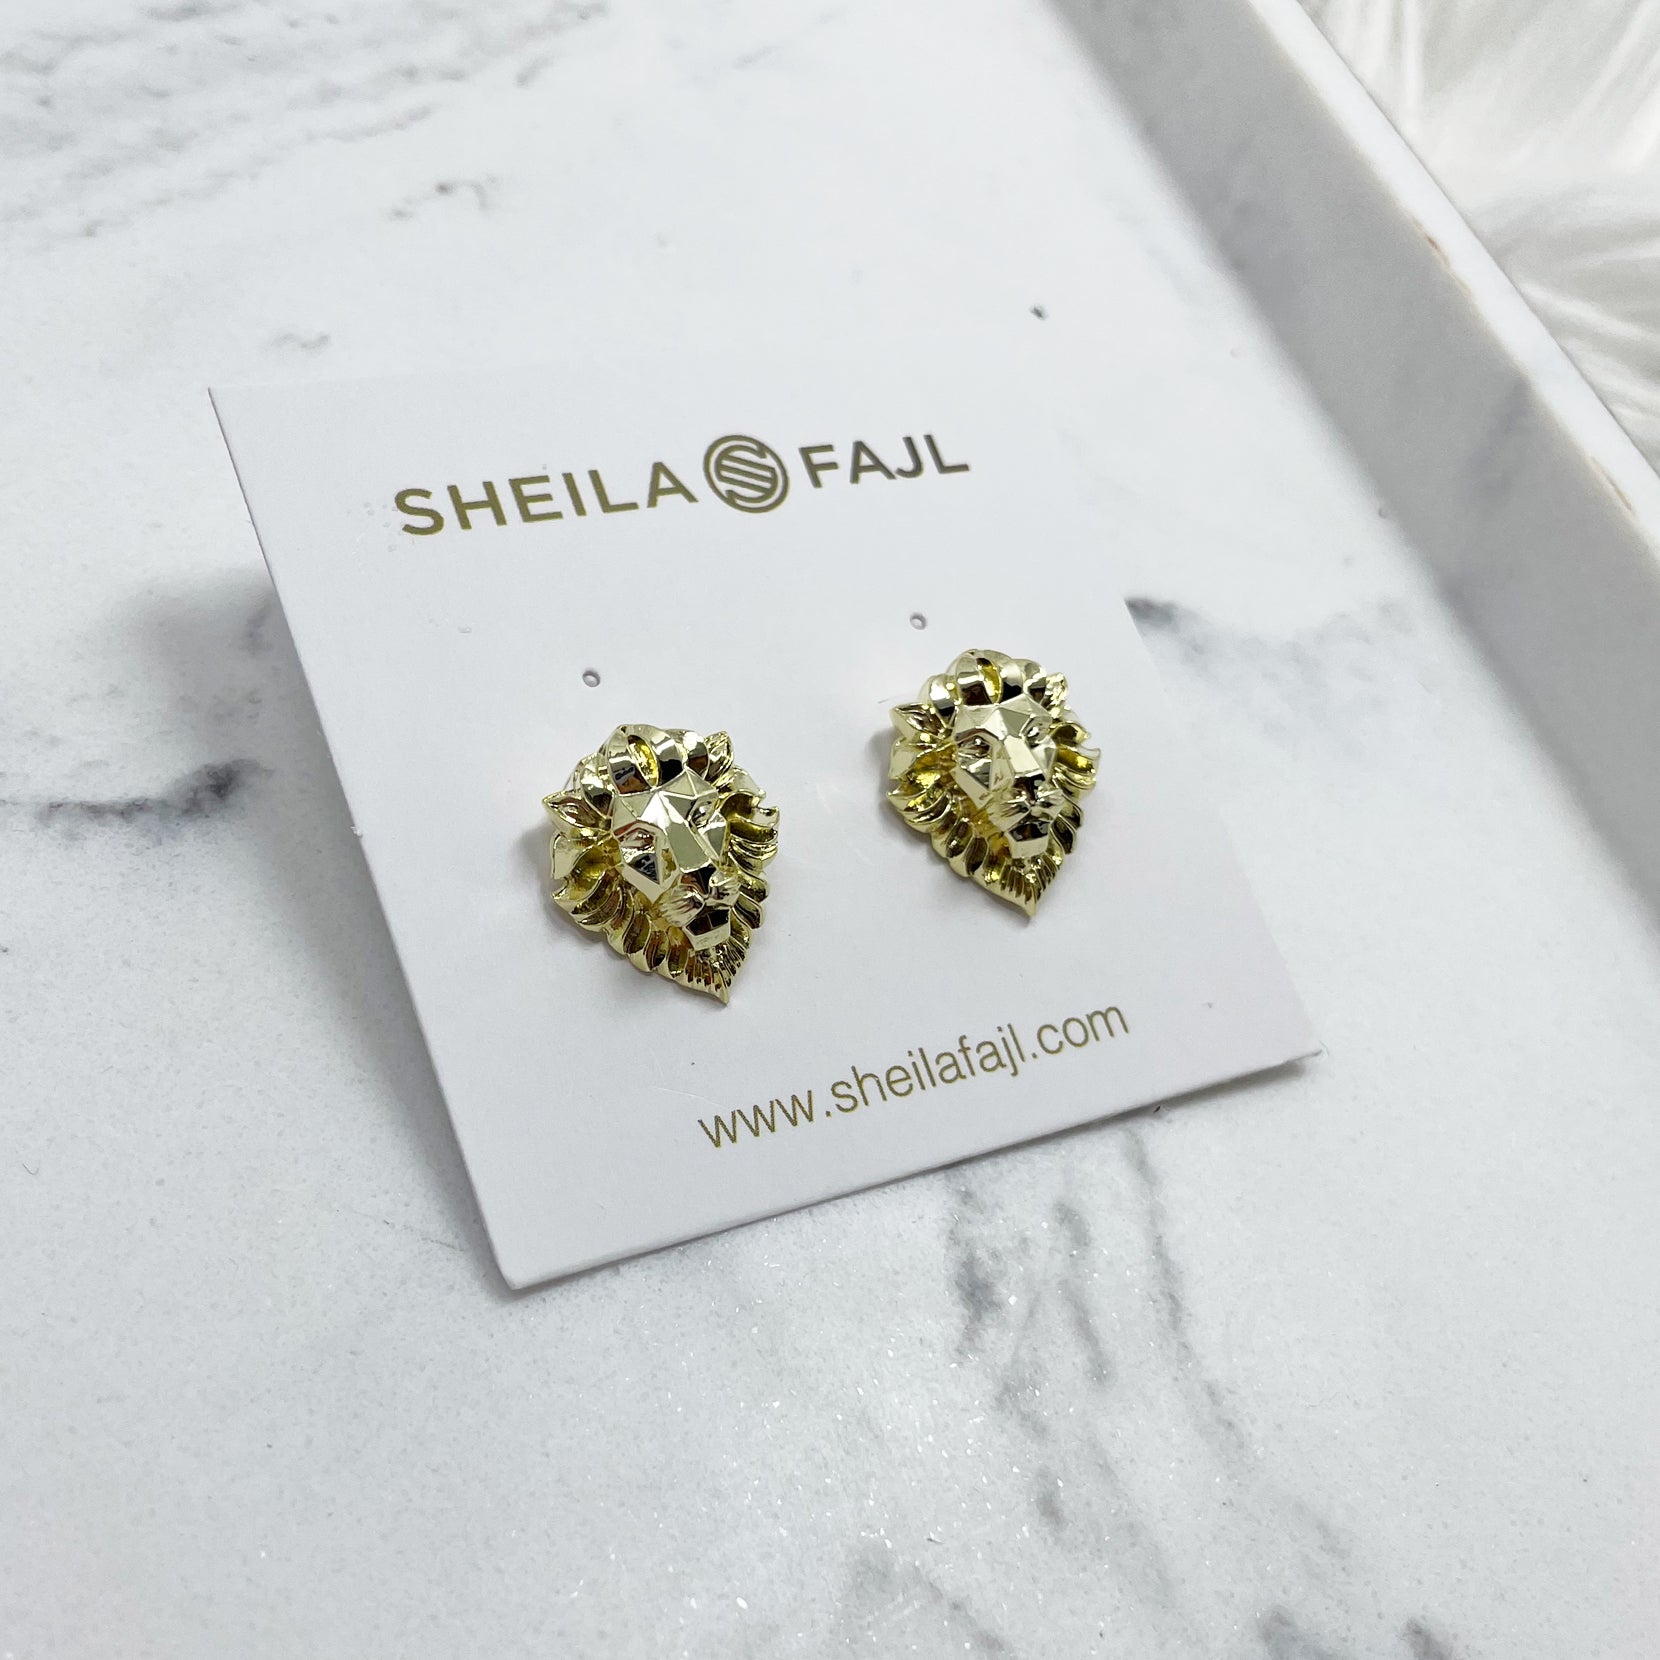 Sheila Fajl Hear Me Roar Lion Stud Earrings in 18k Polished Gold Plated